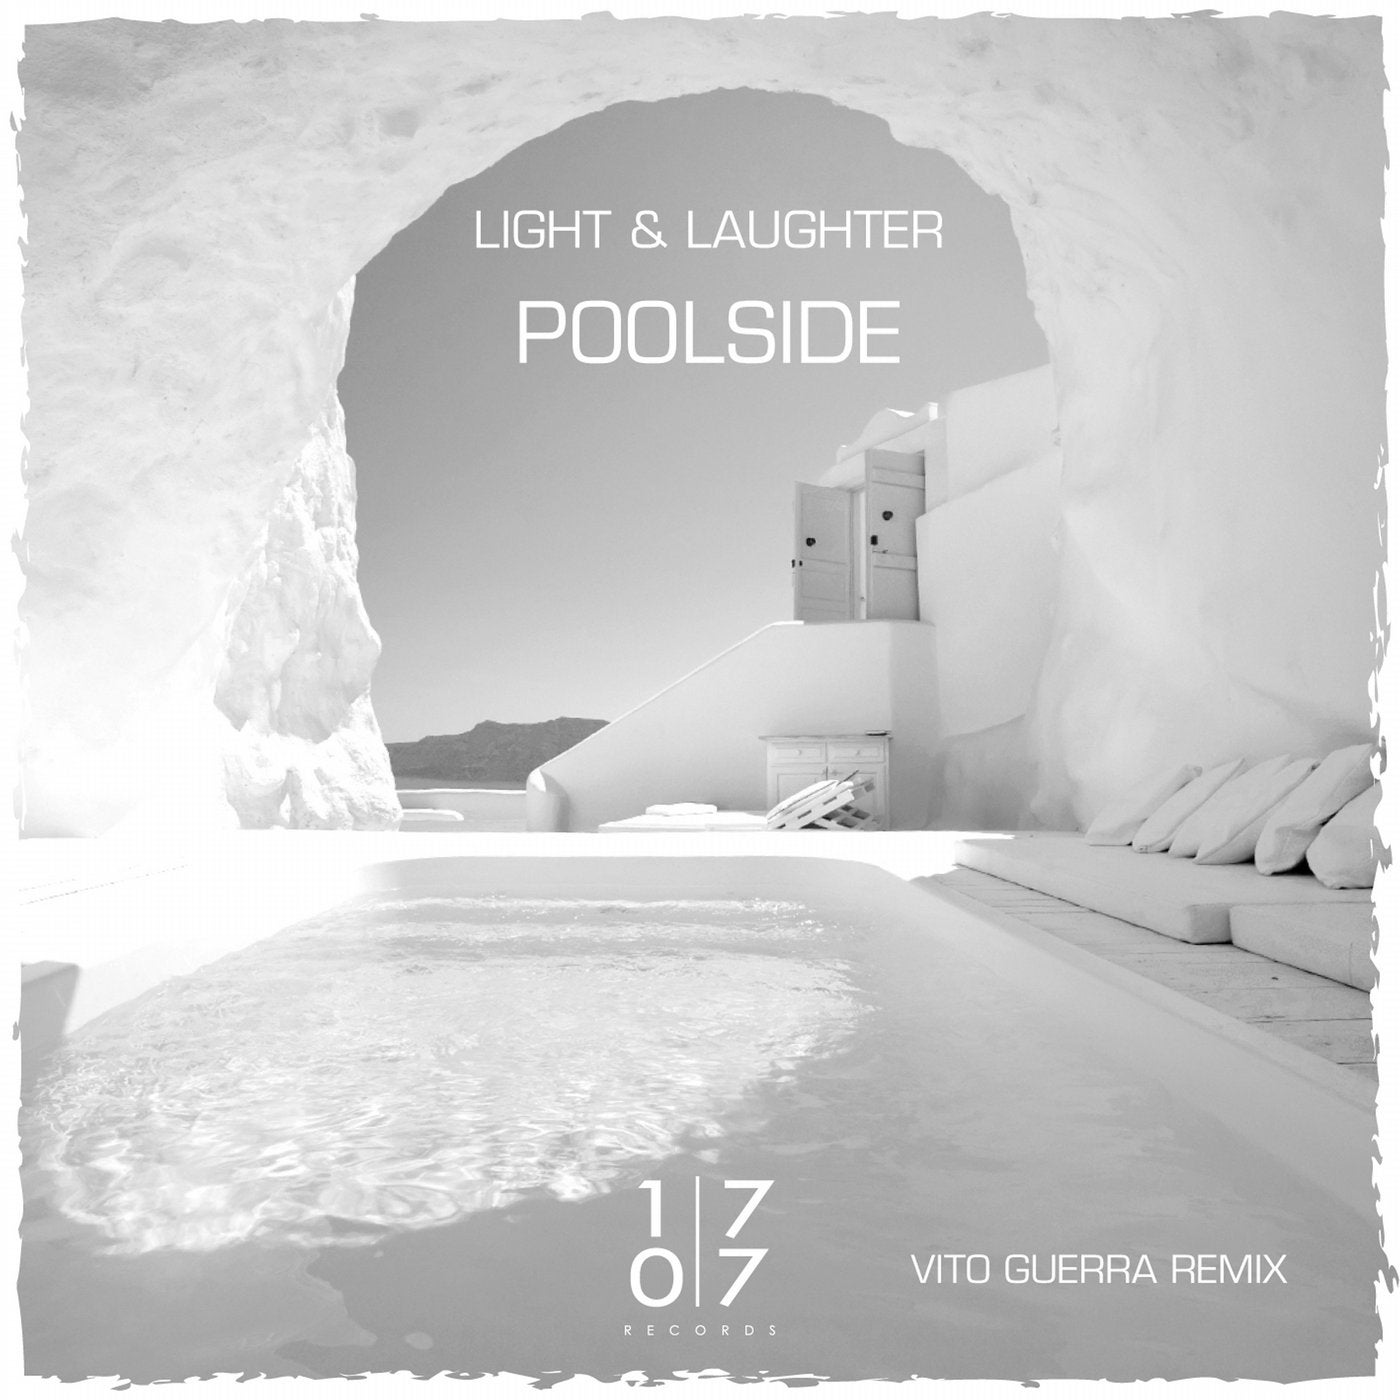 Poolside - Vito Guerra Remix